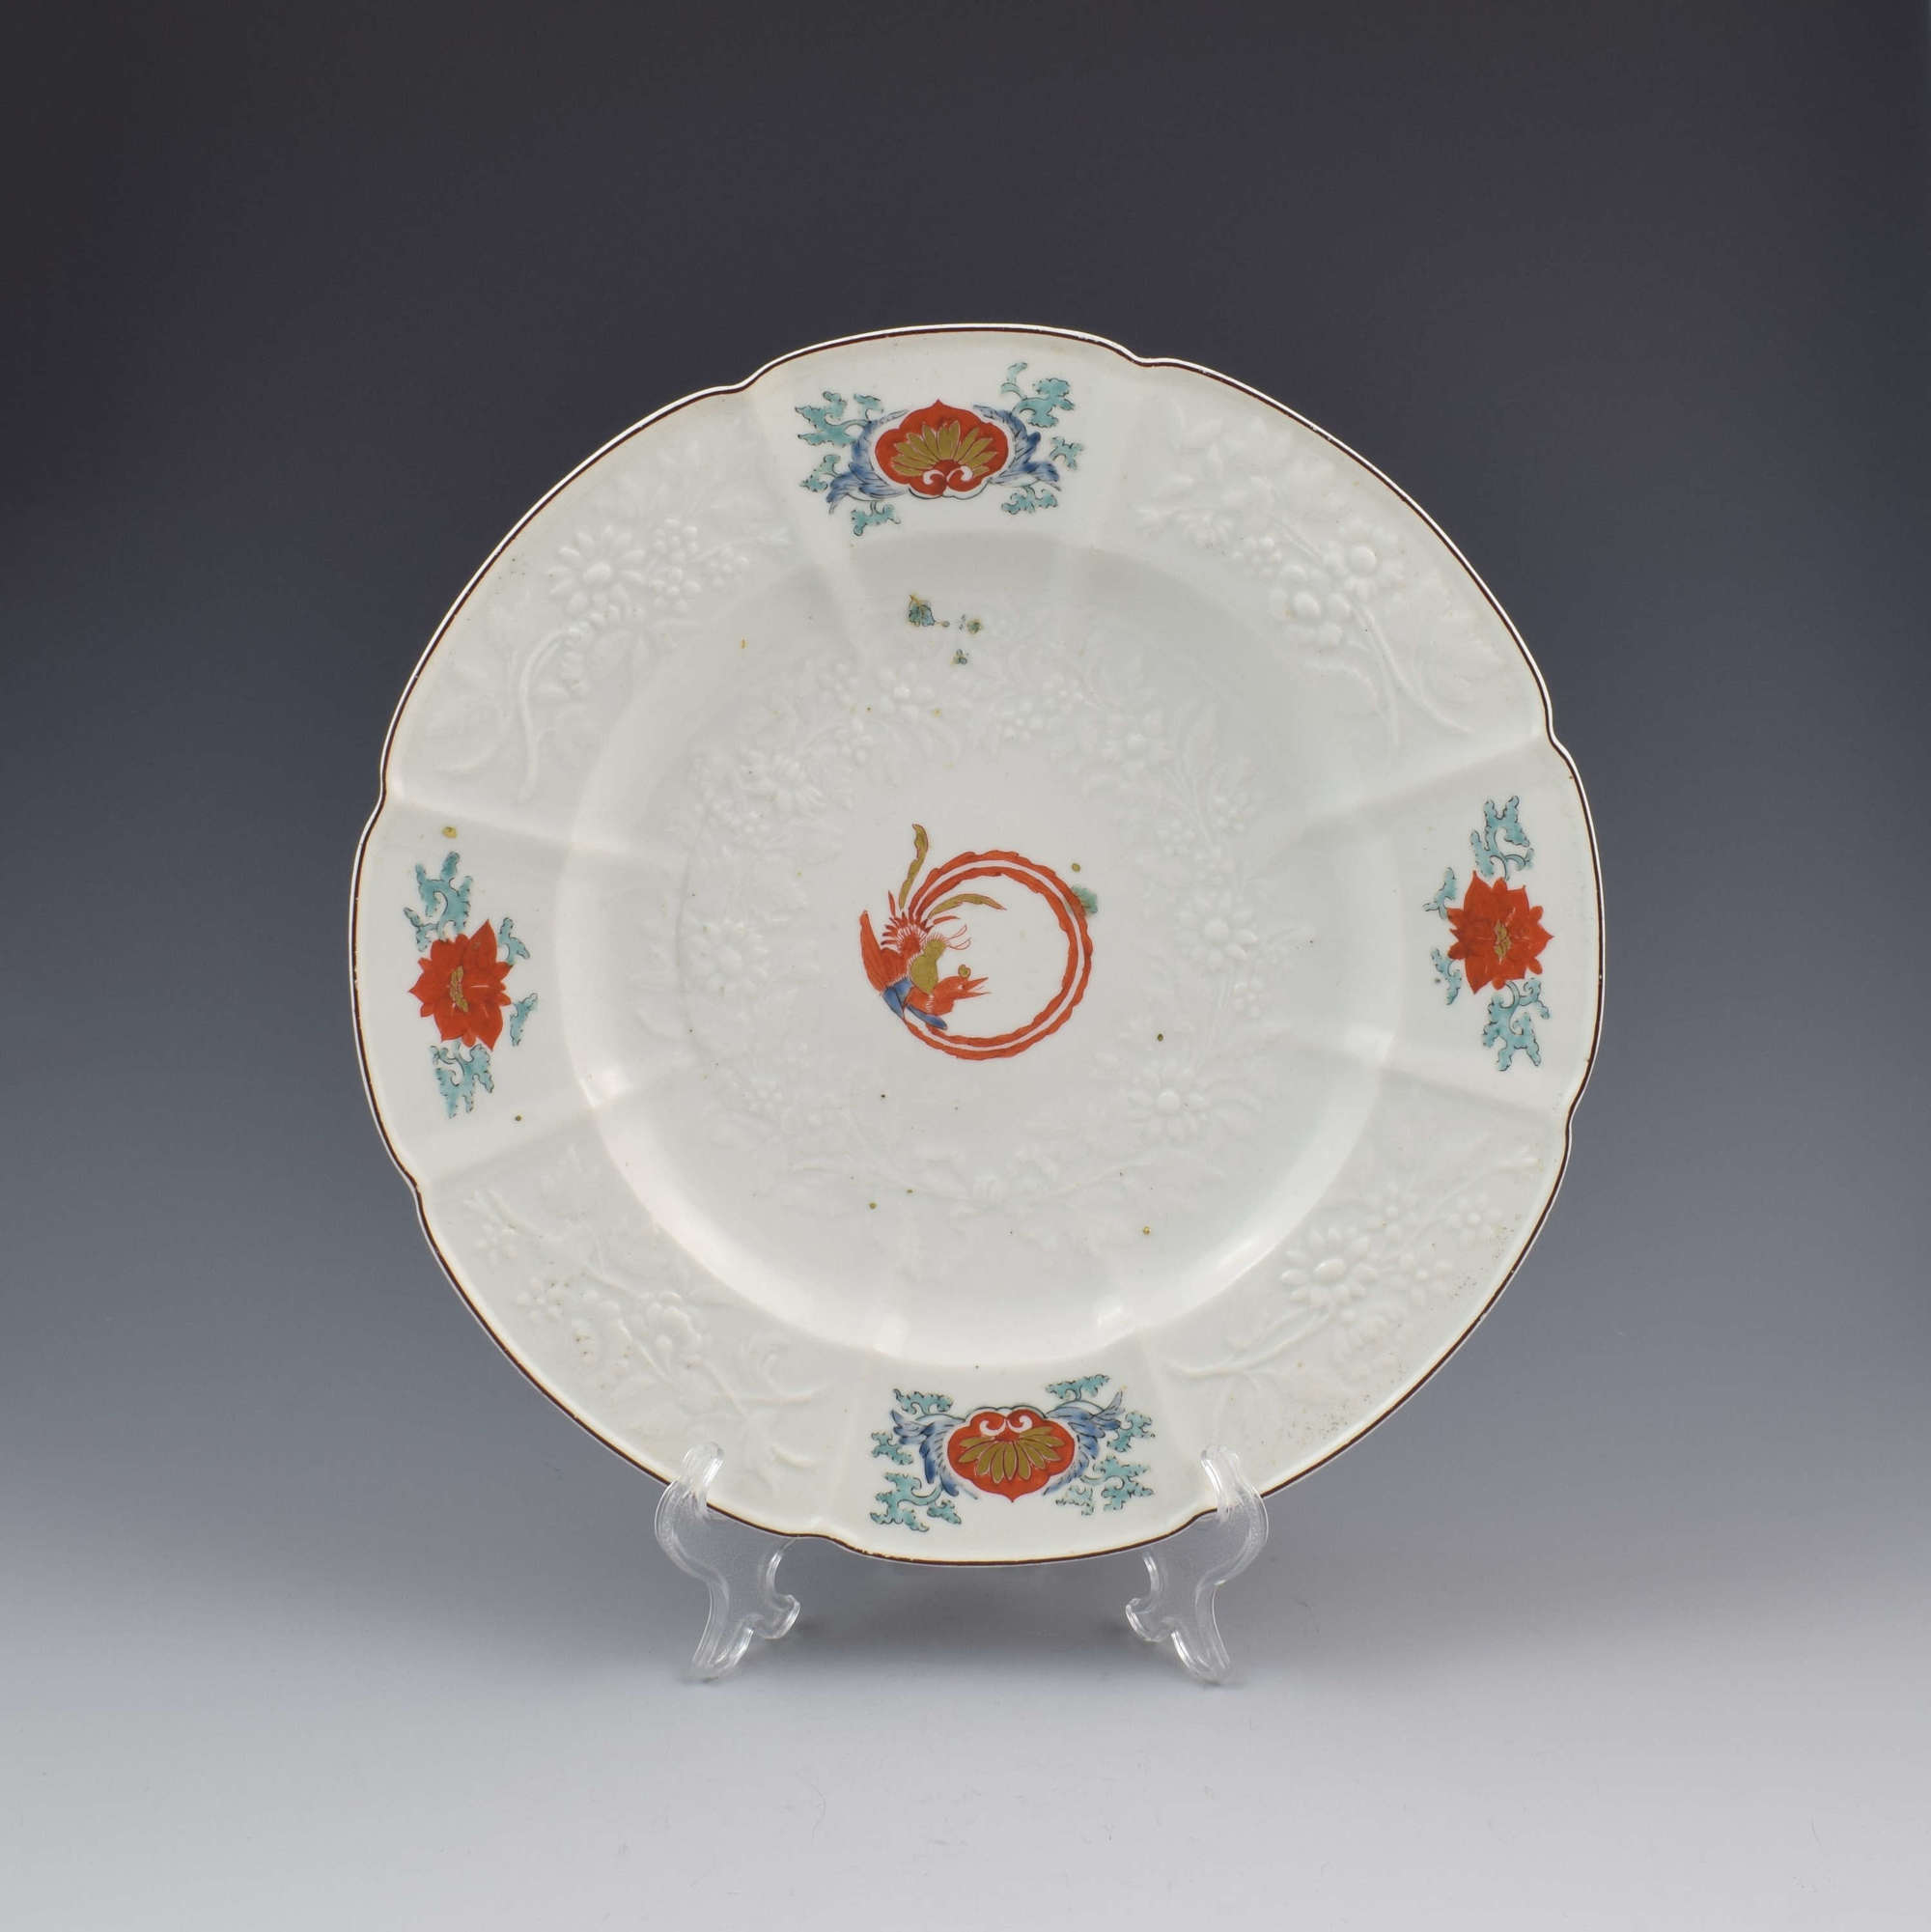 Chelsea Porcelain Kakiemon Damask'd Plate Coiled Phoenix c.1754